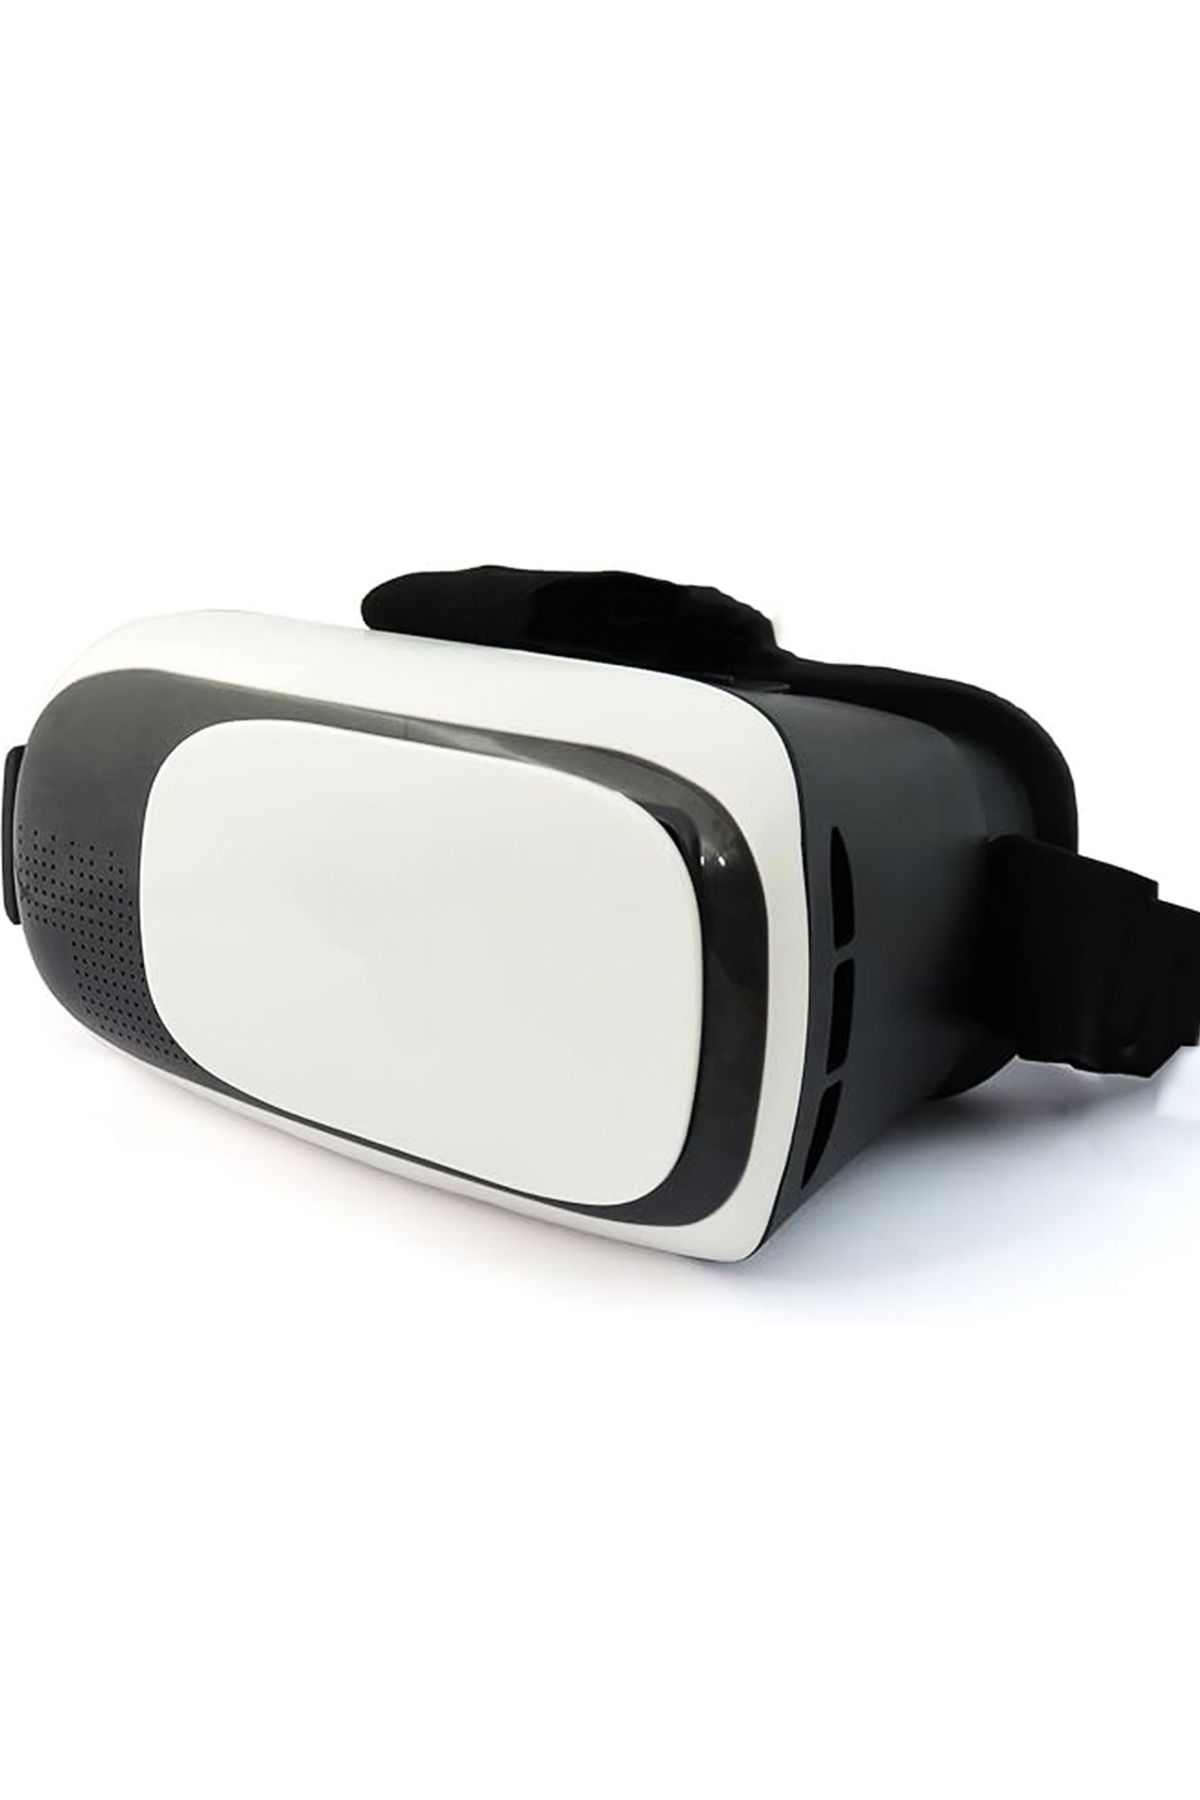 Microcase VR Box 3D Sanal Gerçeklik Gözlüğü - AL4188